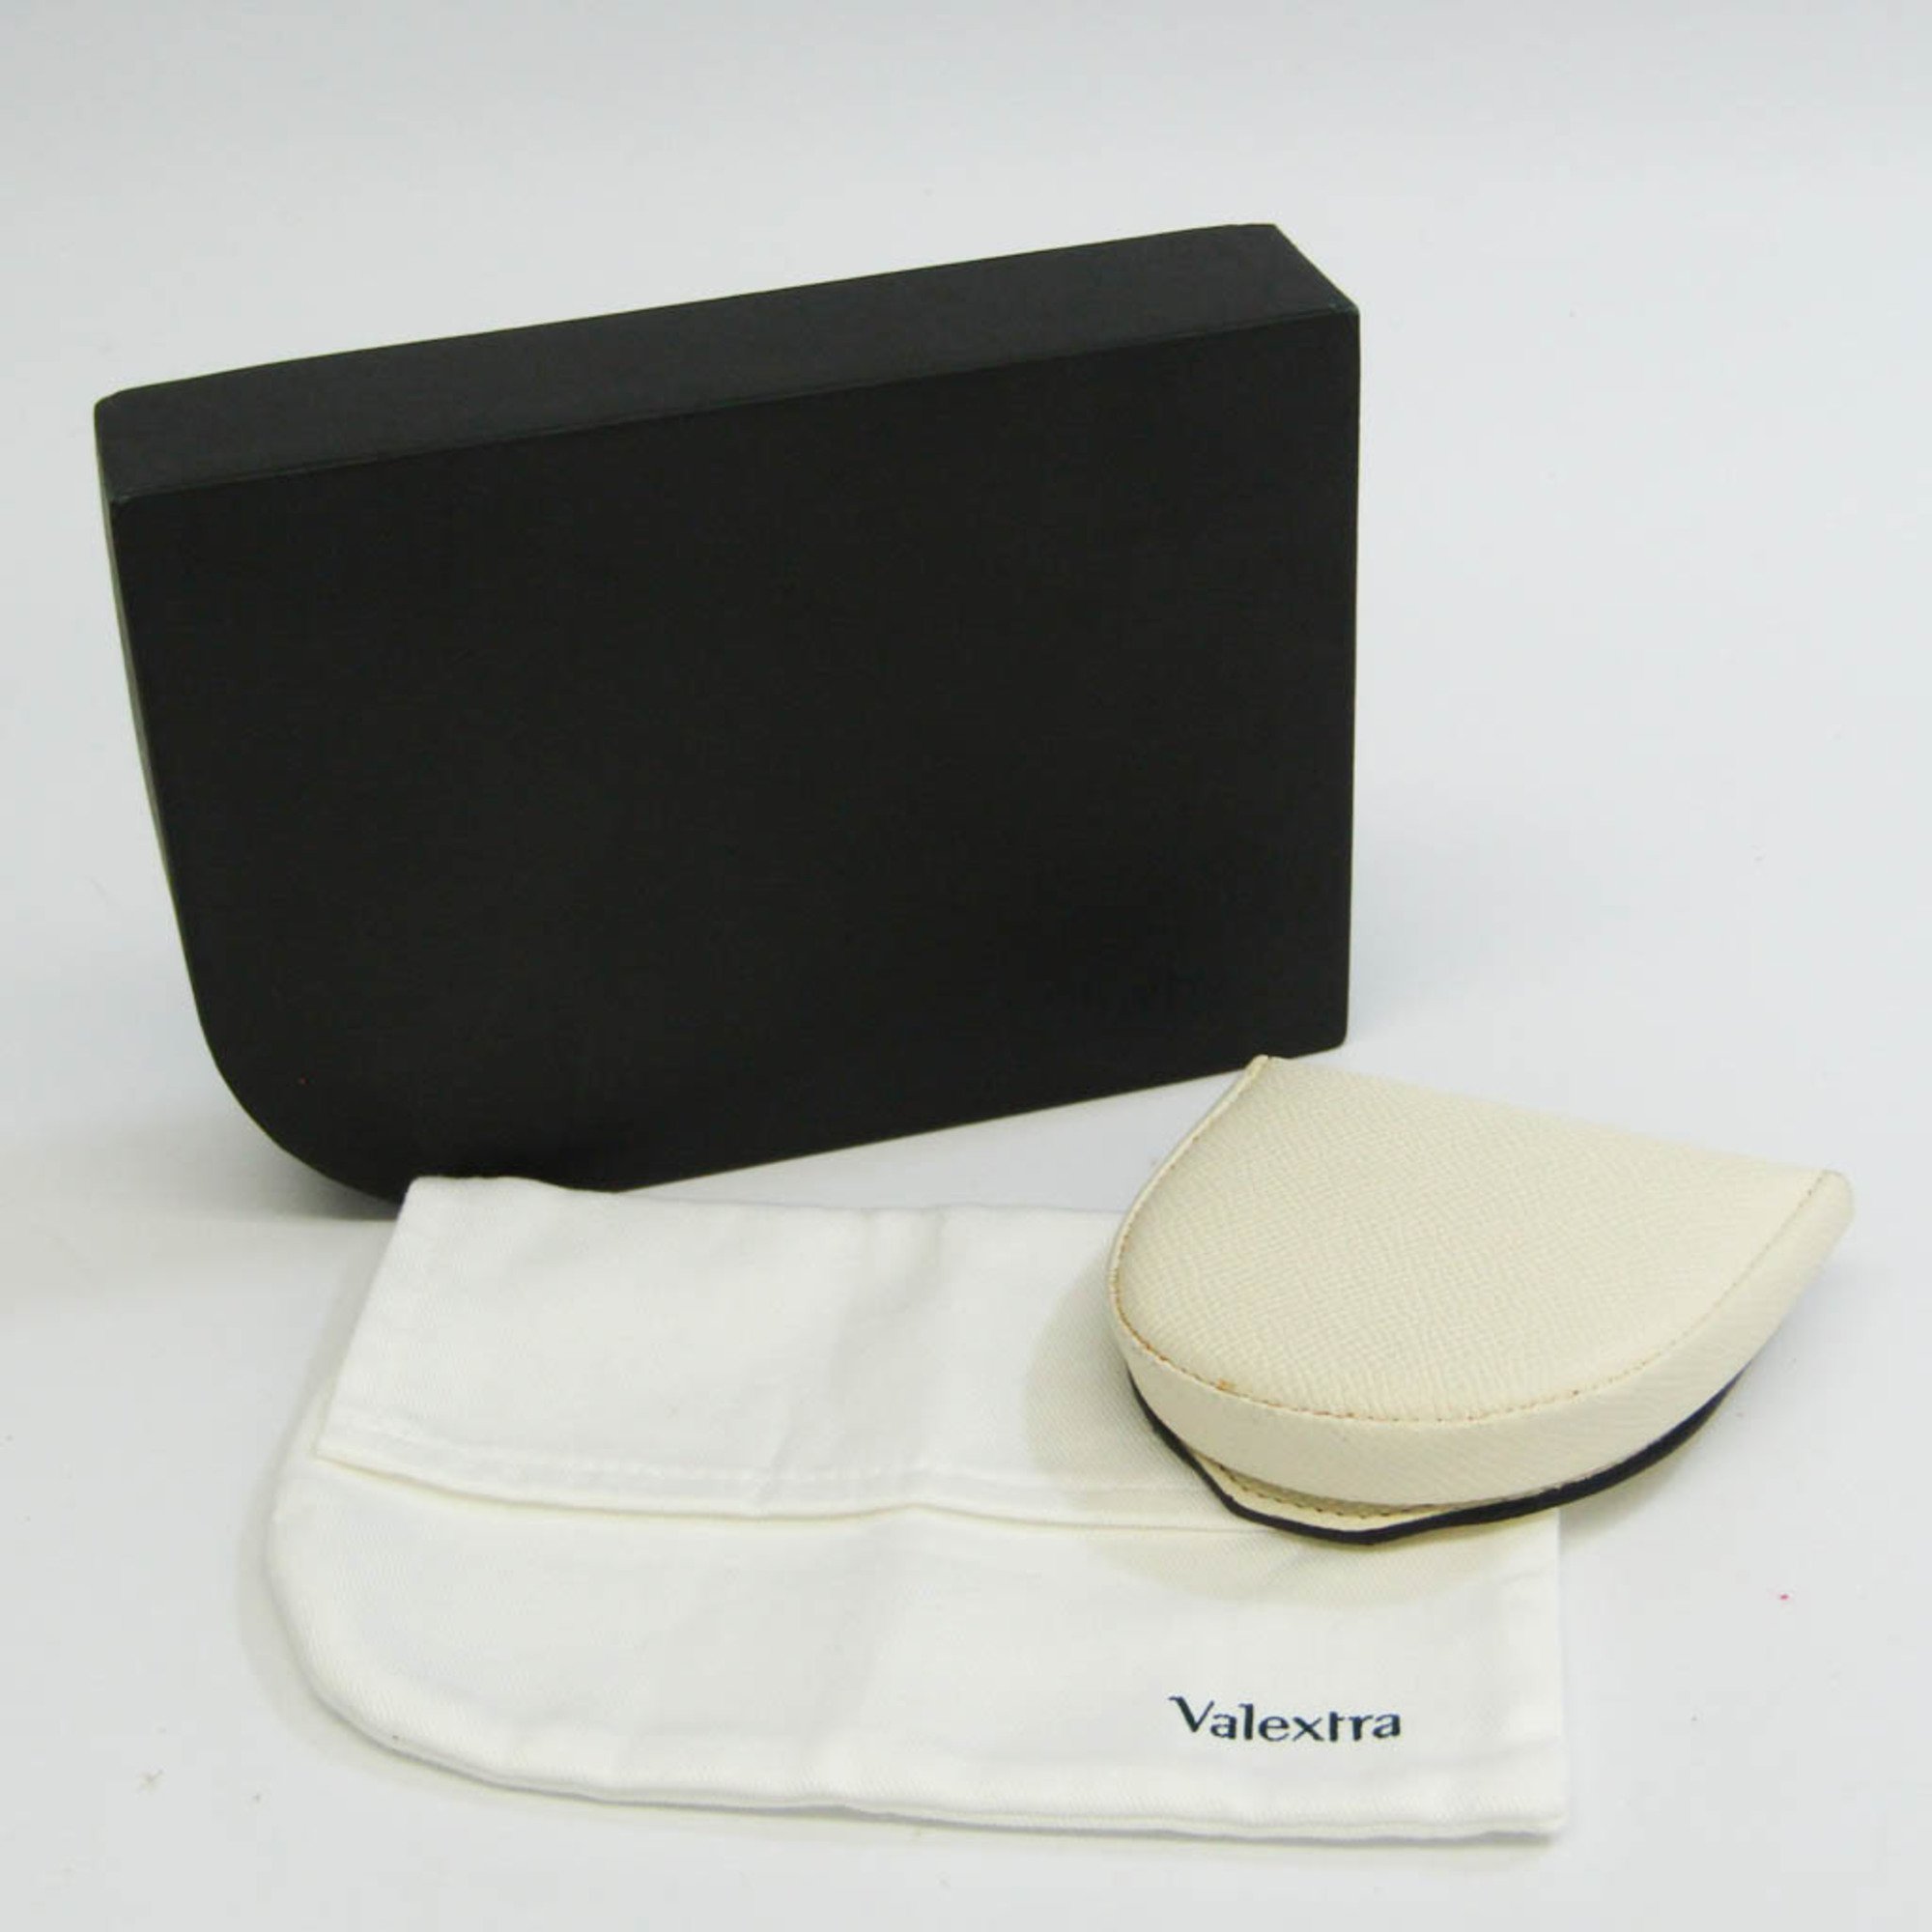 ヴァレクストラ(Valextra) V0L89 レディース,メンズ レザー 小銭入れ・コインケース オフホワイト